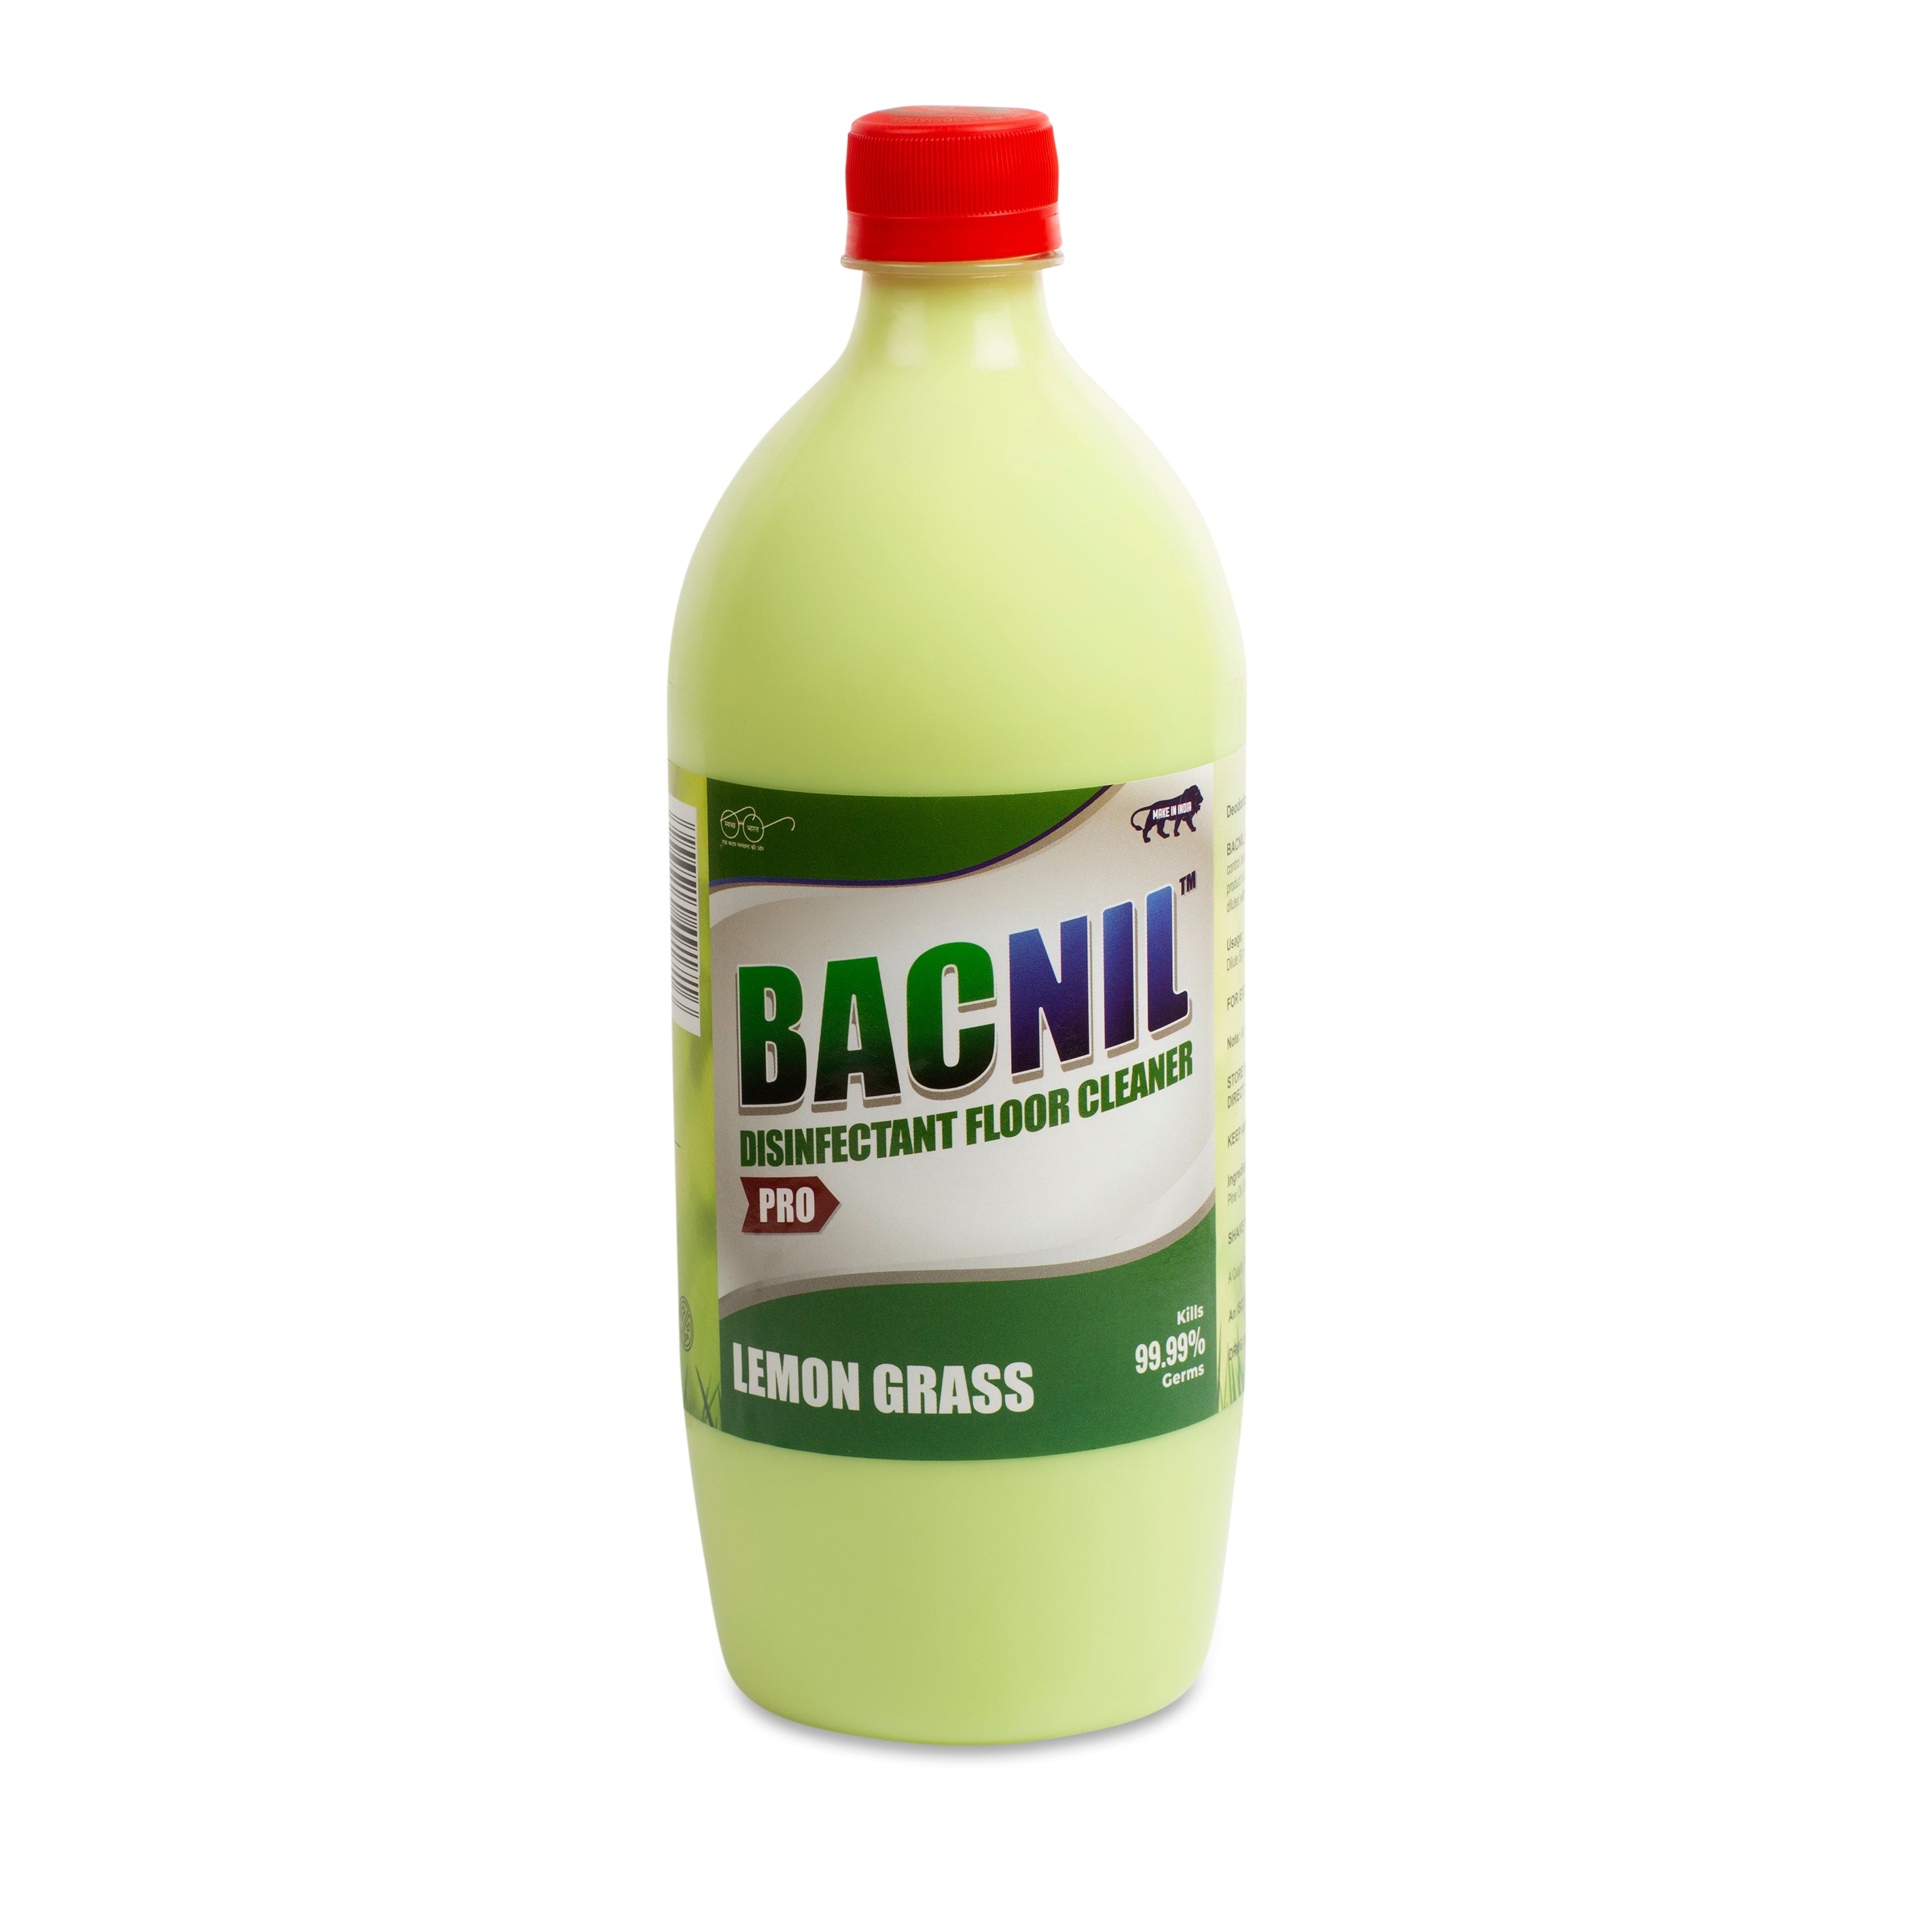 Bacnil Pro - Lemon Grass Floor Cleaner